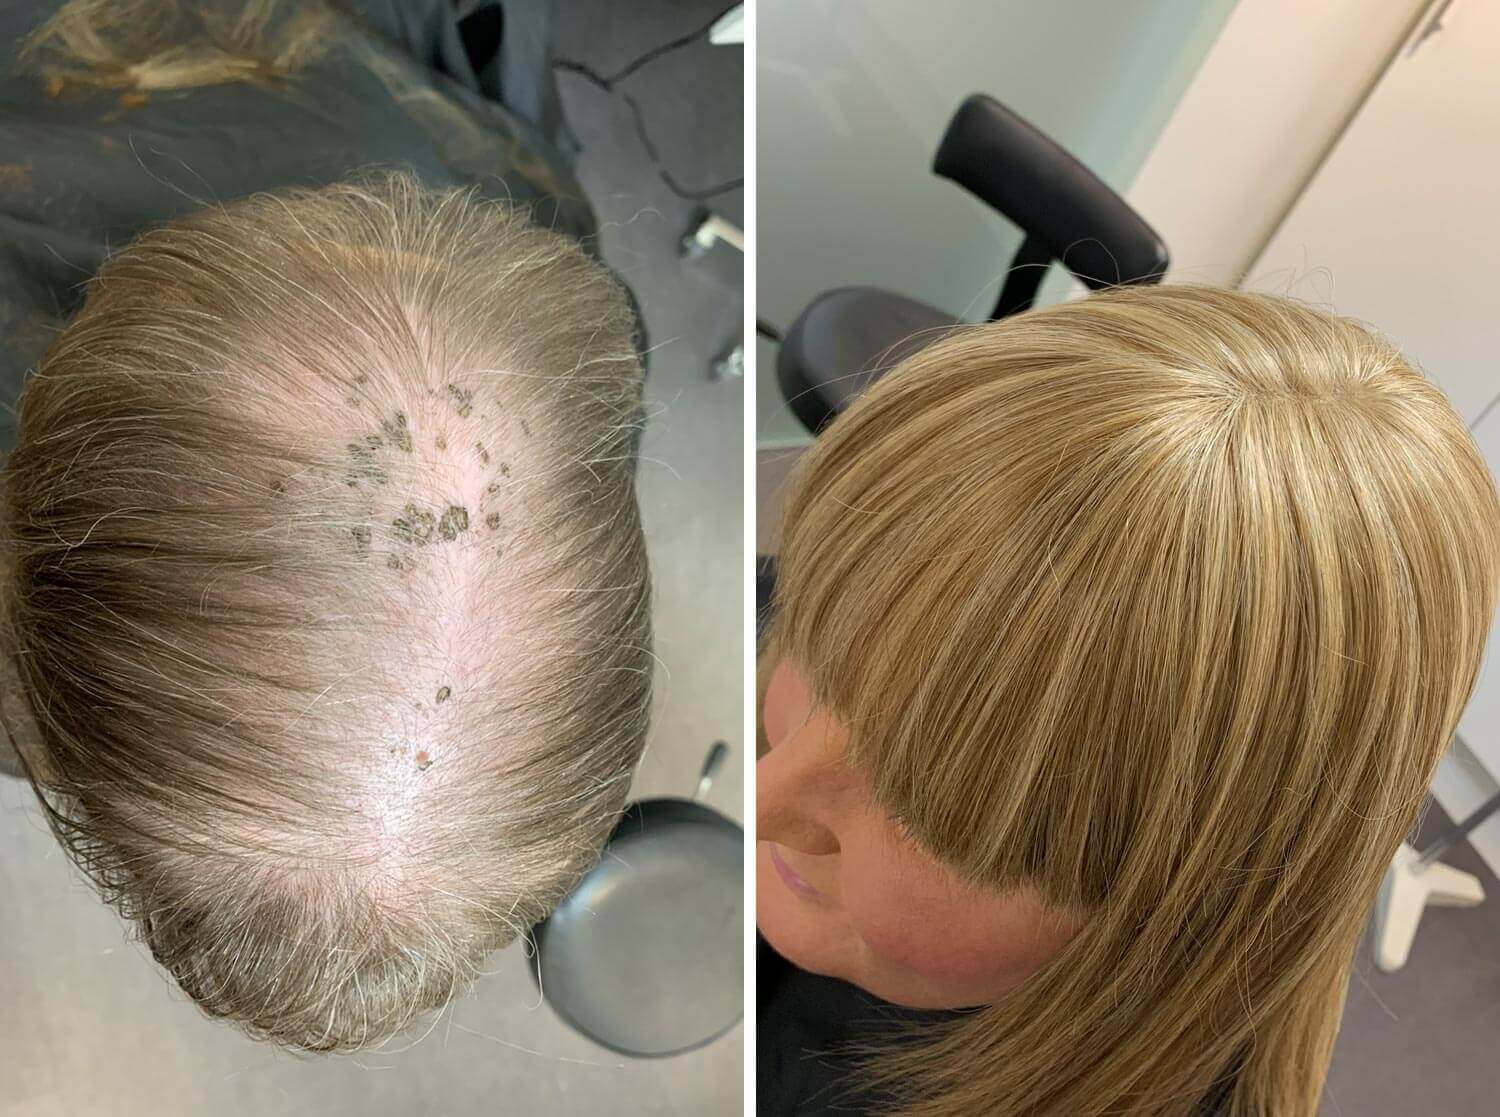 Før og efter billede af en kvinde med alopecia. I dette tilfælde er hun blevet meget tyndhåret.